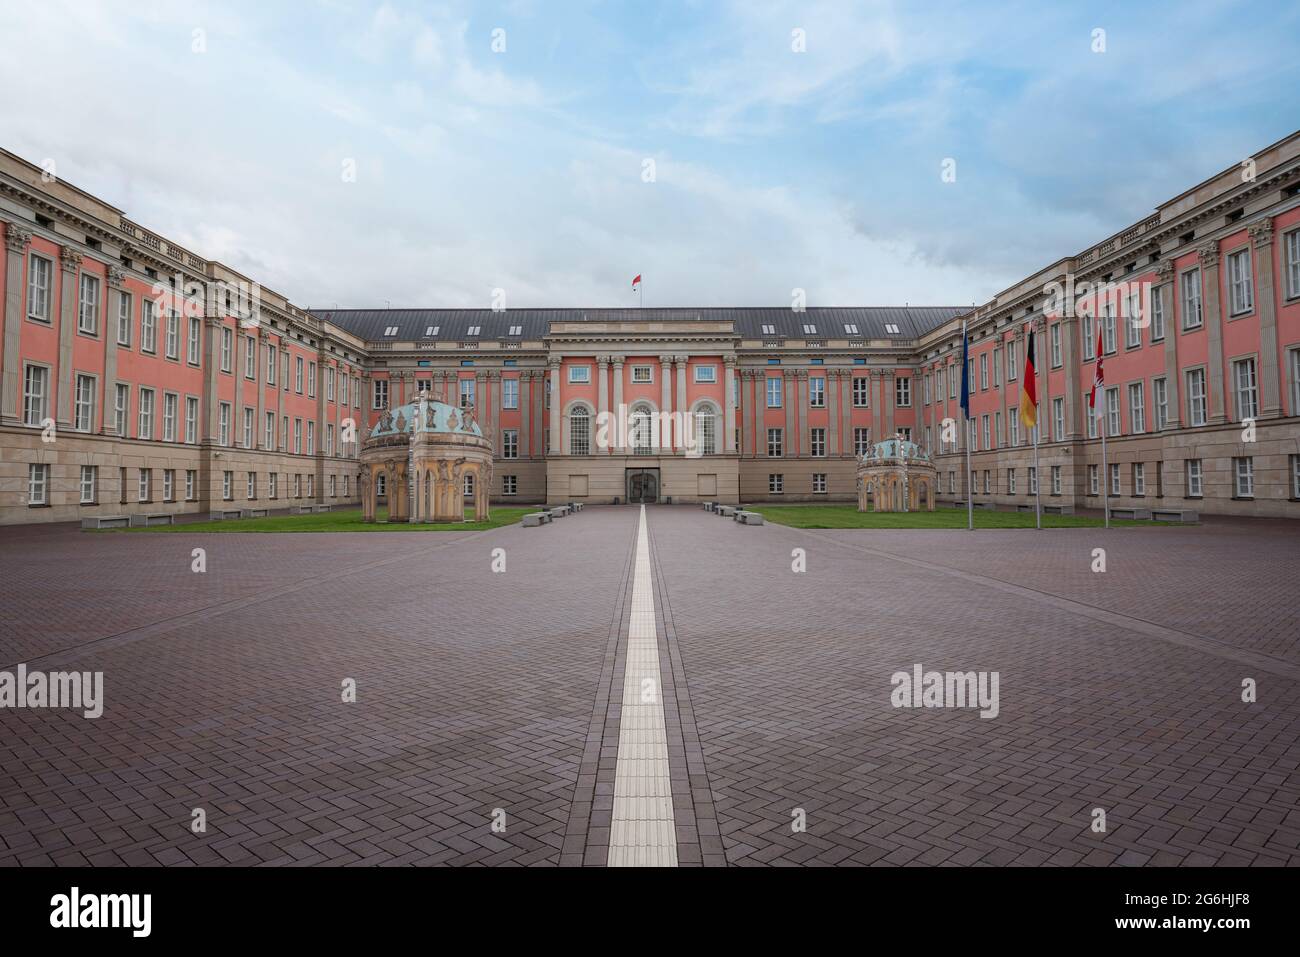 Potsdam City Palace - Landtag di Brandeburgo - sede del parlamento dello Stato federale di Brandeburgo - Potsdam, Germania Foto Stock